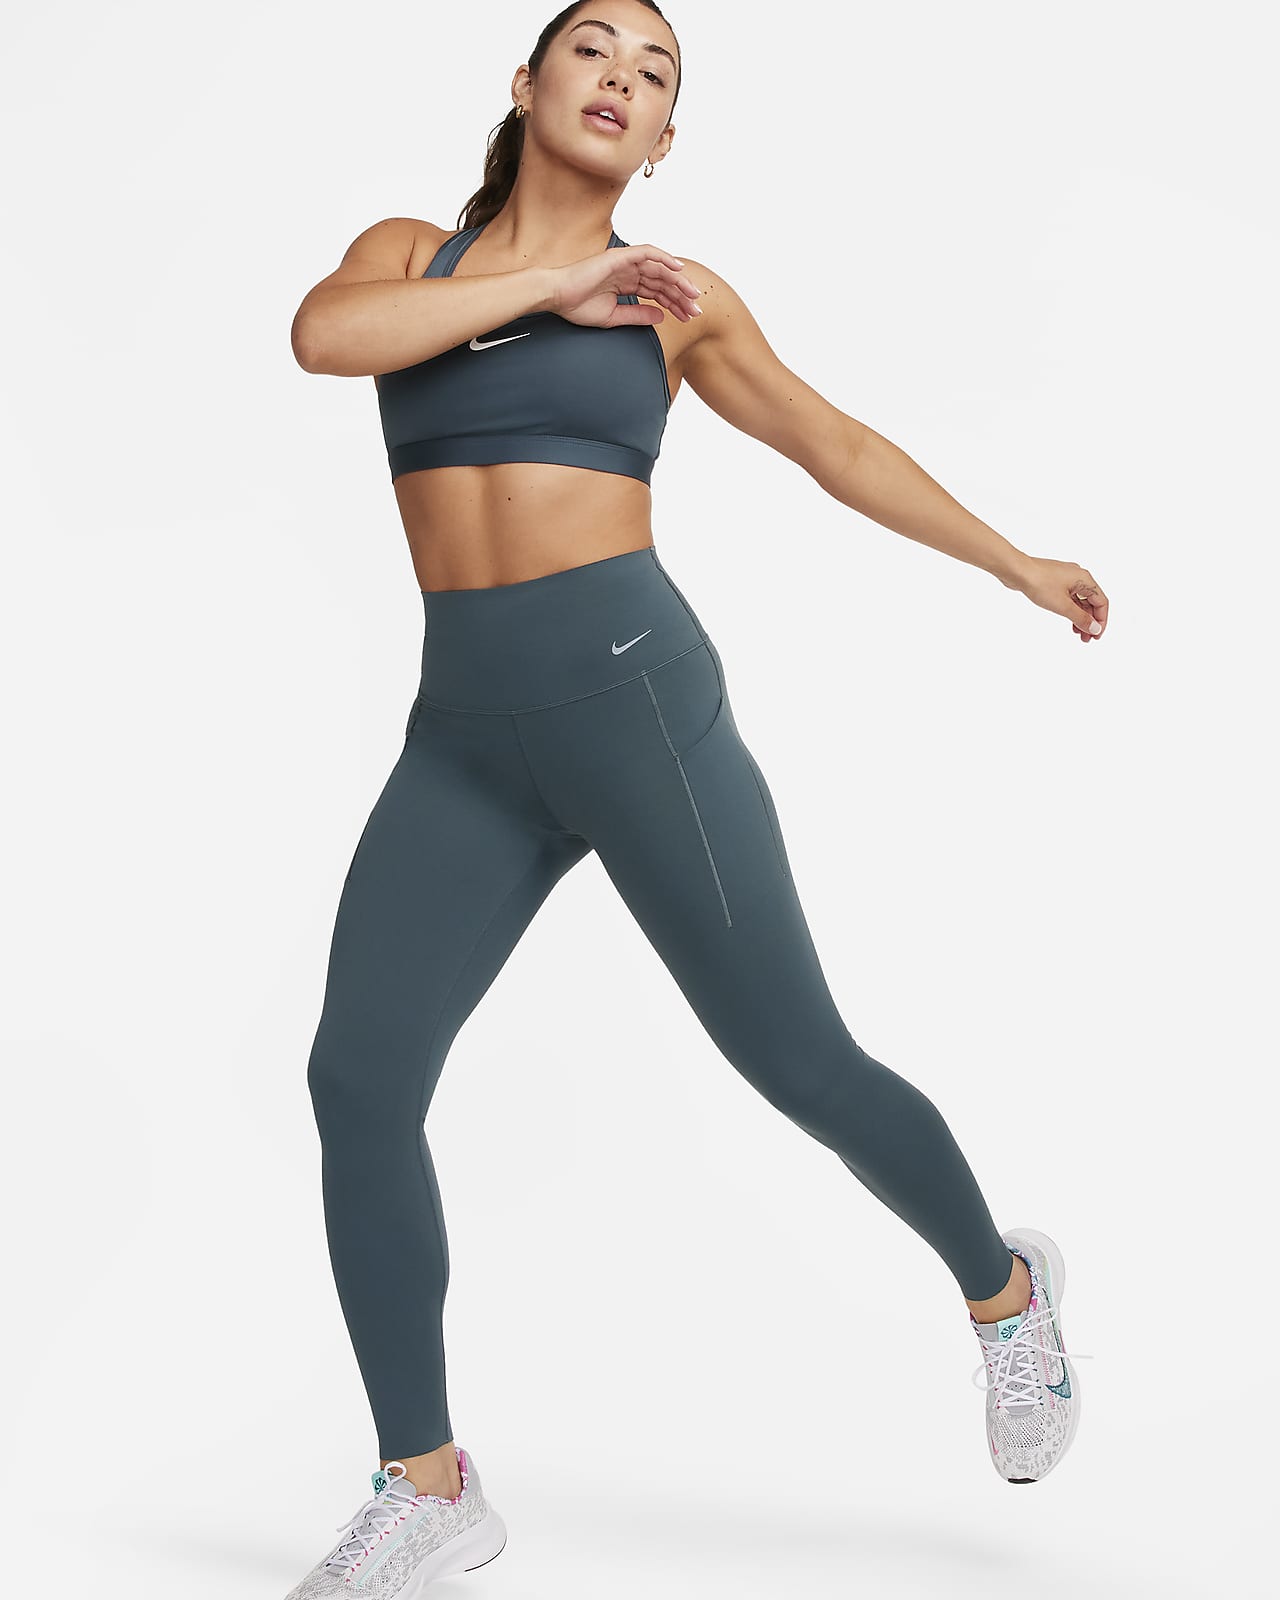 Nike Universa-leggings i fuld længde med medium støtte, høj talje og lommer til kvinder